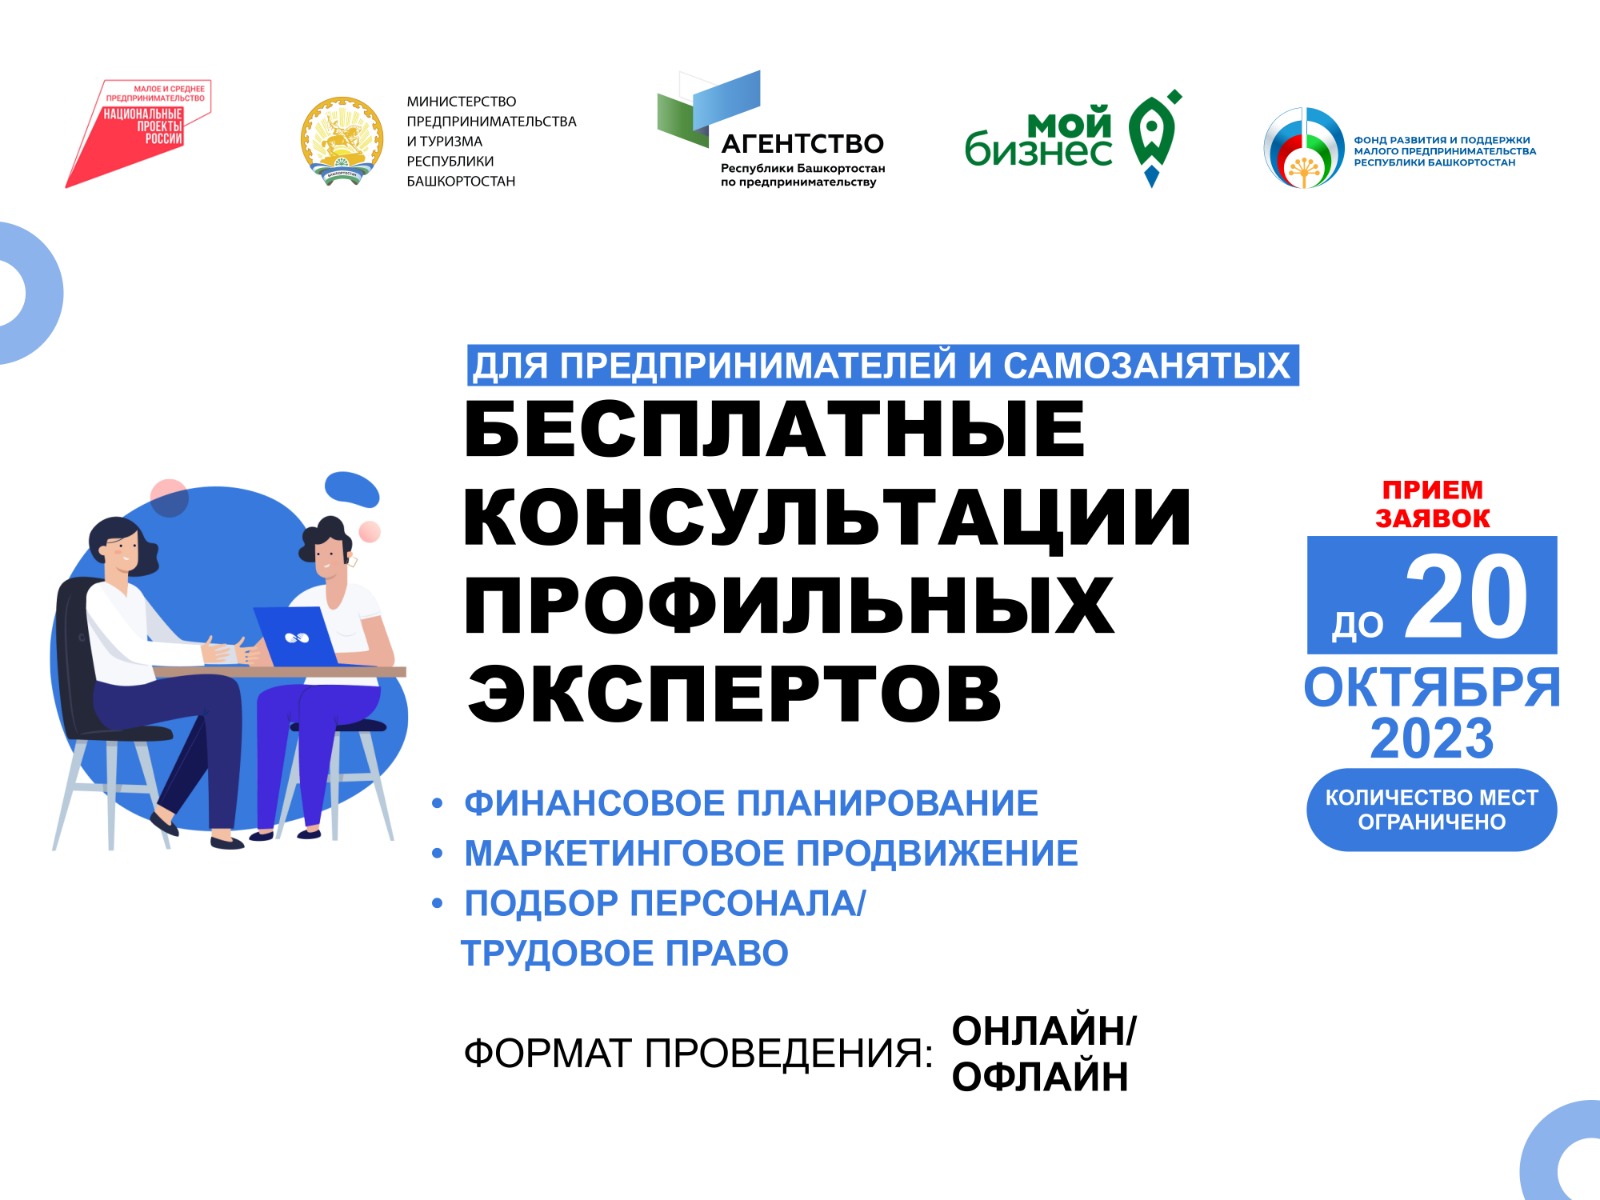 Предприниматели и самозанятые Республики Башкортостан могут получить бесплатные консультации профильных экспертов